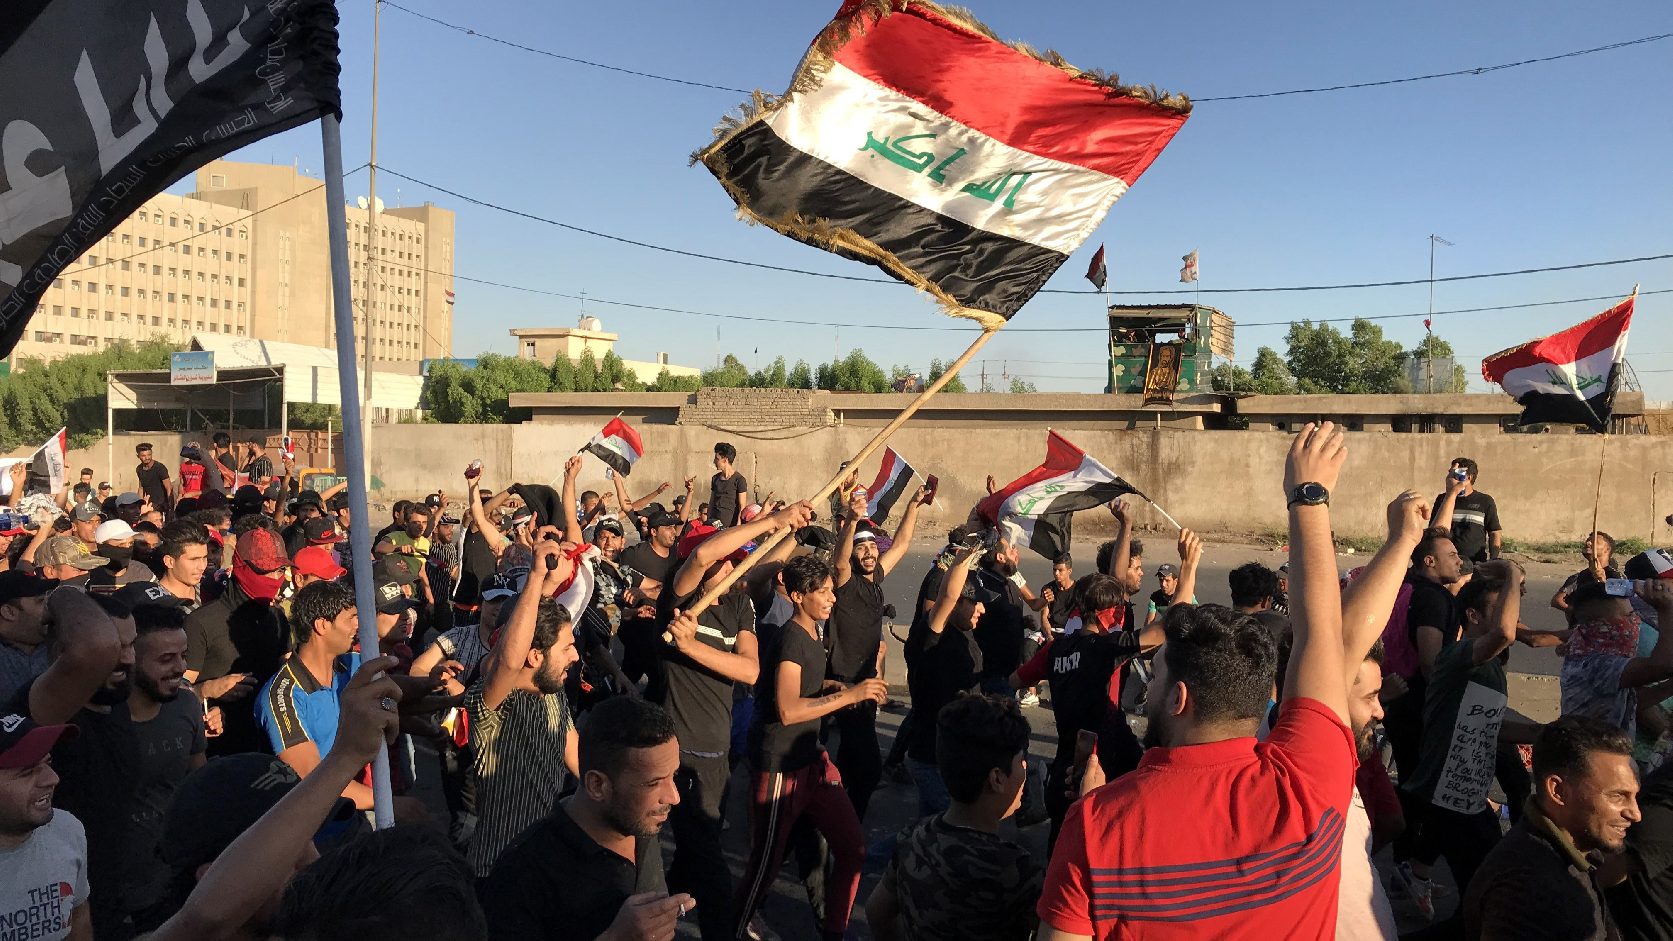 Sokan meghaltak kormányellenes megmozdulásokon az iraki Kerbelában